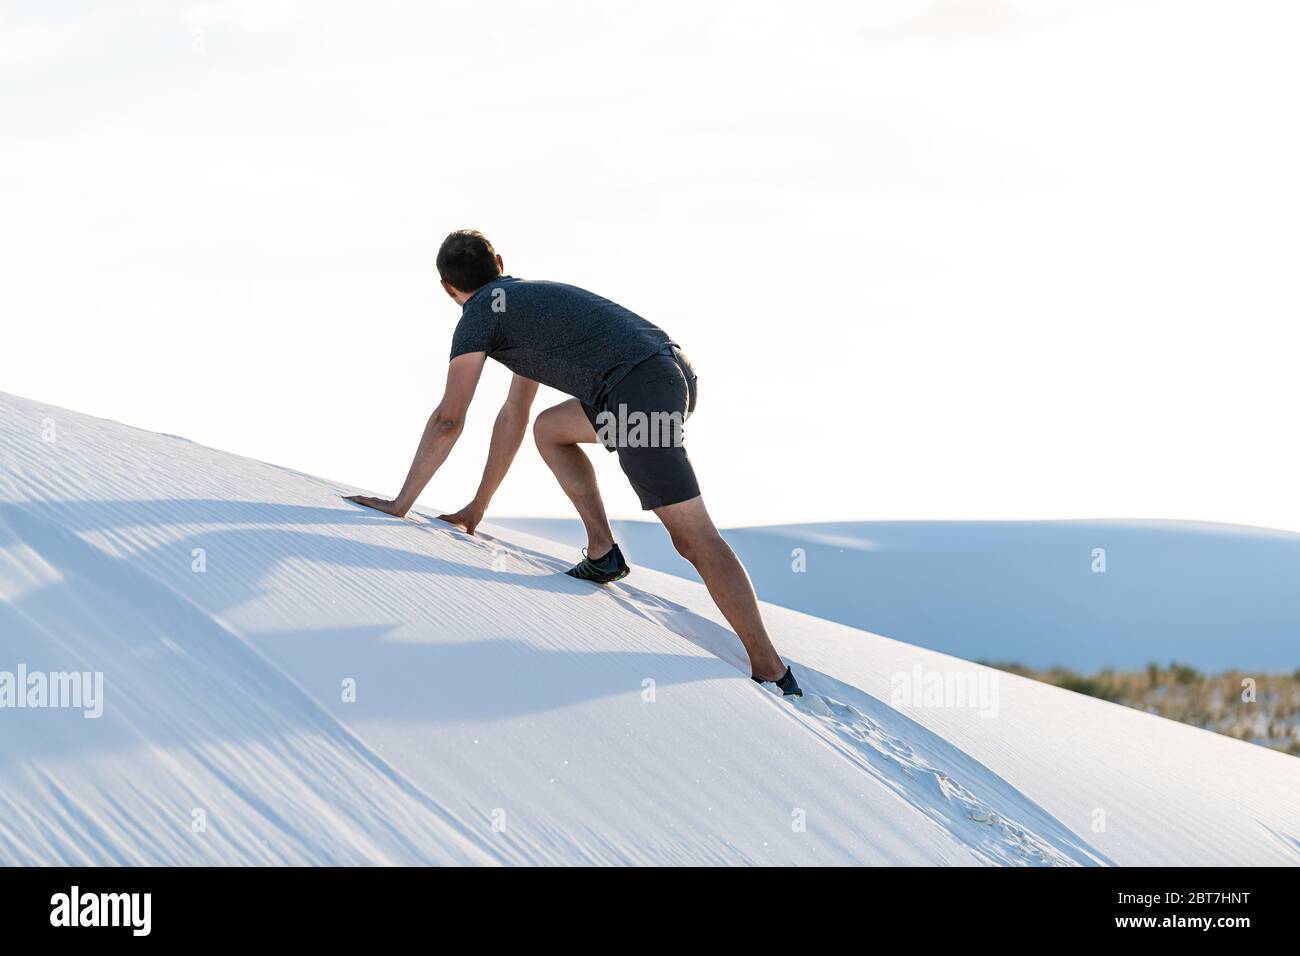 Homme une personne escalade sur tous les fours sur une colline de sable dans les dunes de sable blanc monument national au Nouveau-Mexique au coucher du soleil regardant la vue Banque D'Images